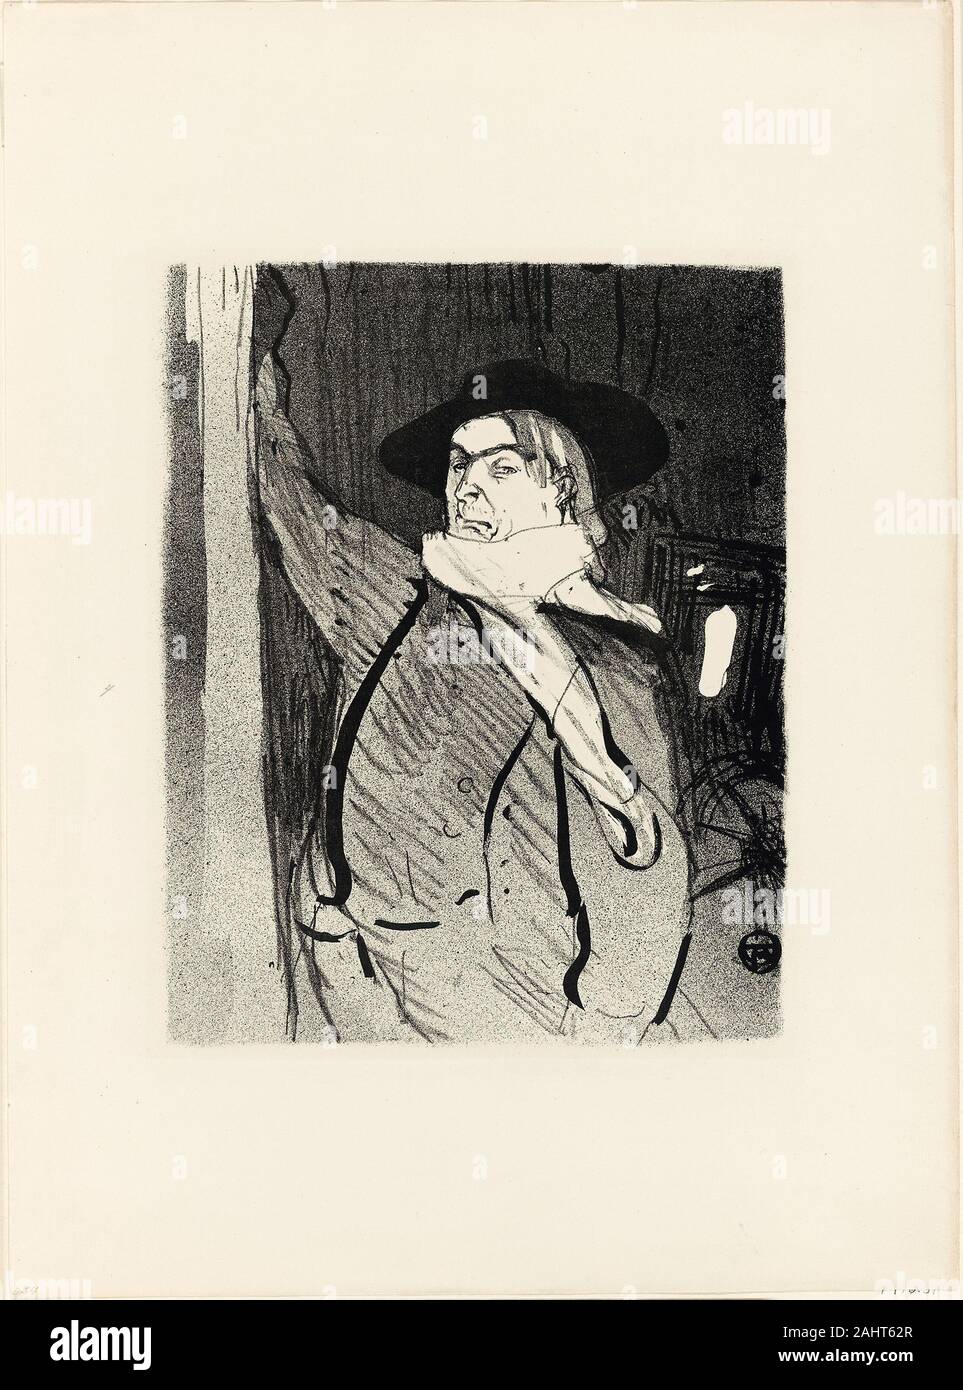 Henri de Toulouse-Lautrec. Portrait of Aristide Bruant, from Le Café-Concert. 1893. France. Lithograph on ivory wove paper Stock Photo